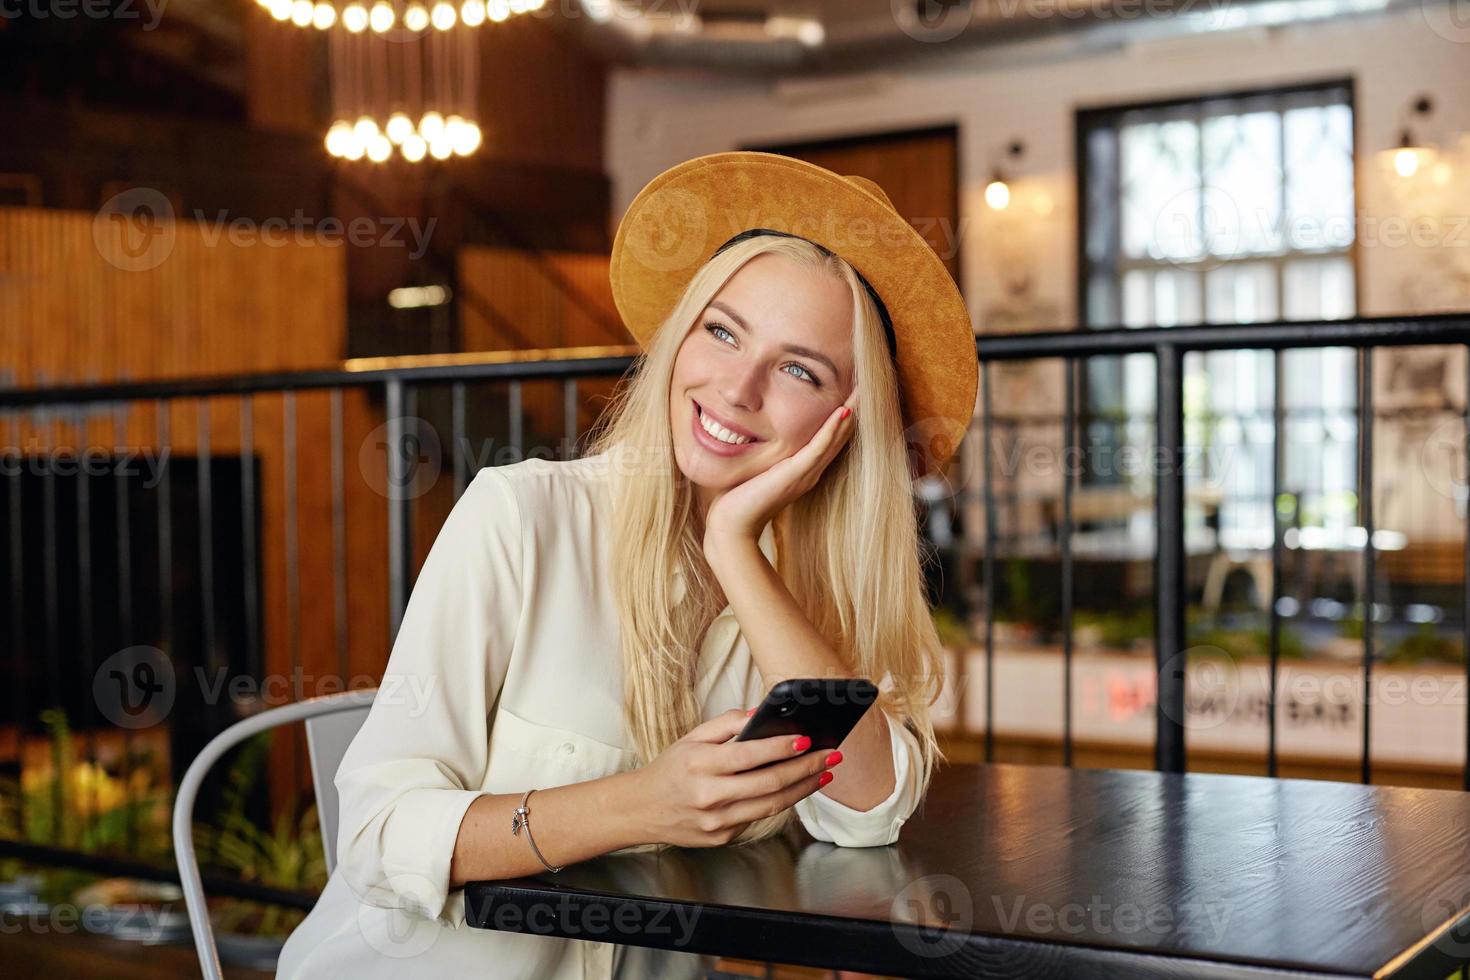 inomhusfoto av charmig ung blond kvinna i vit skjorta och brun hatt som sitter över kaféinteriören, lutar huvudet mot sin handflata och tittar drömmande åt sidan foto